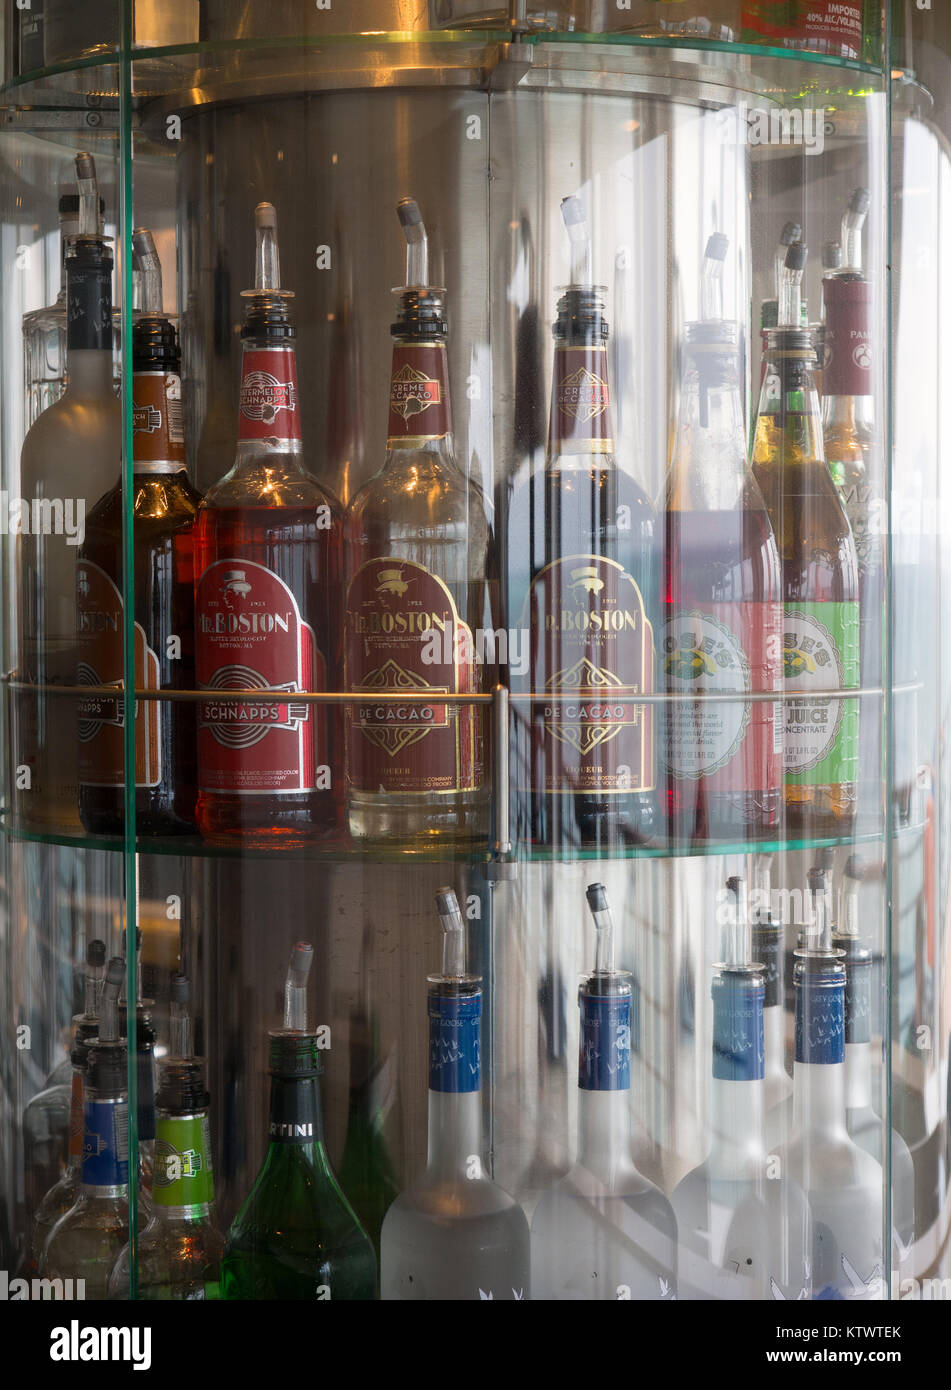 Les bouteilles d'alcool dans une armoire Photo Stock - Alamy